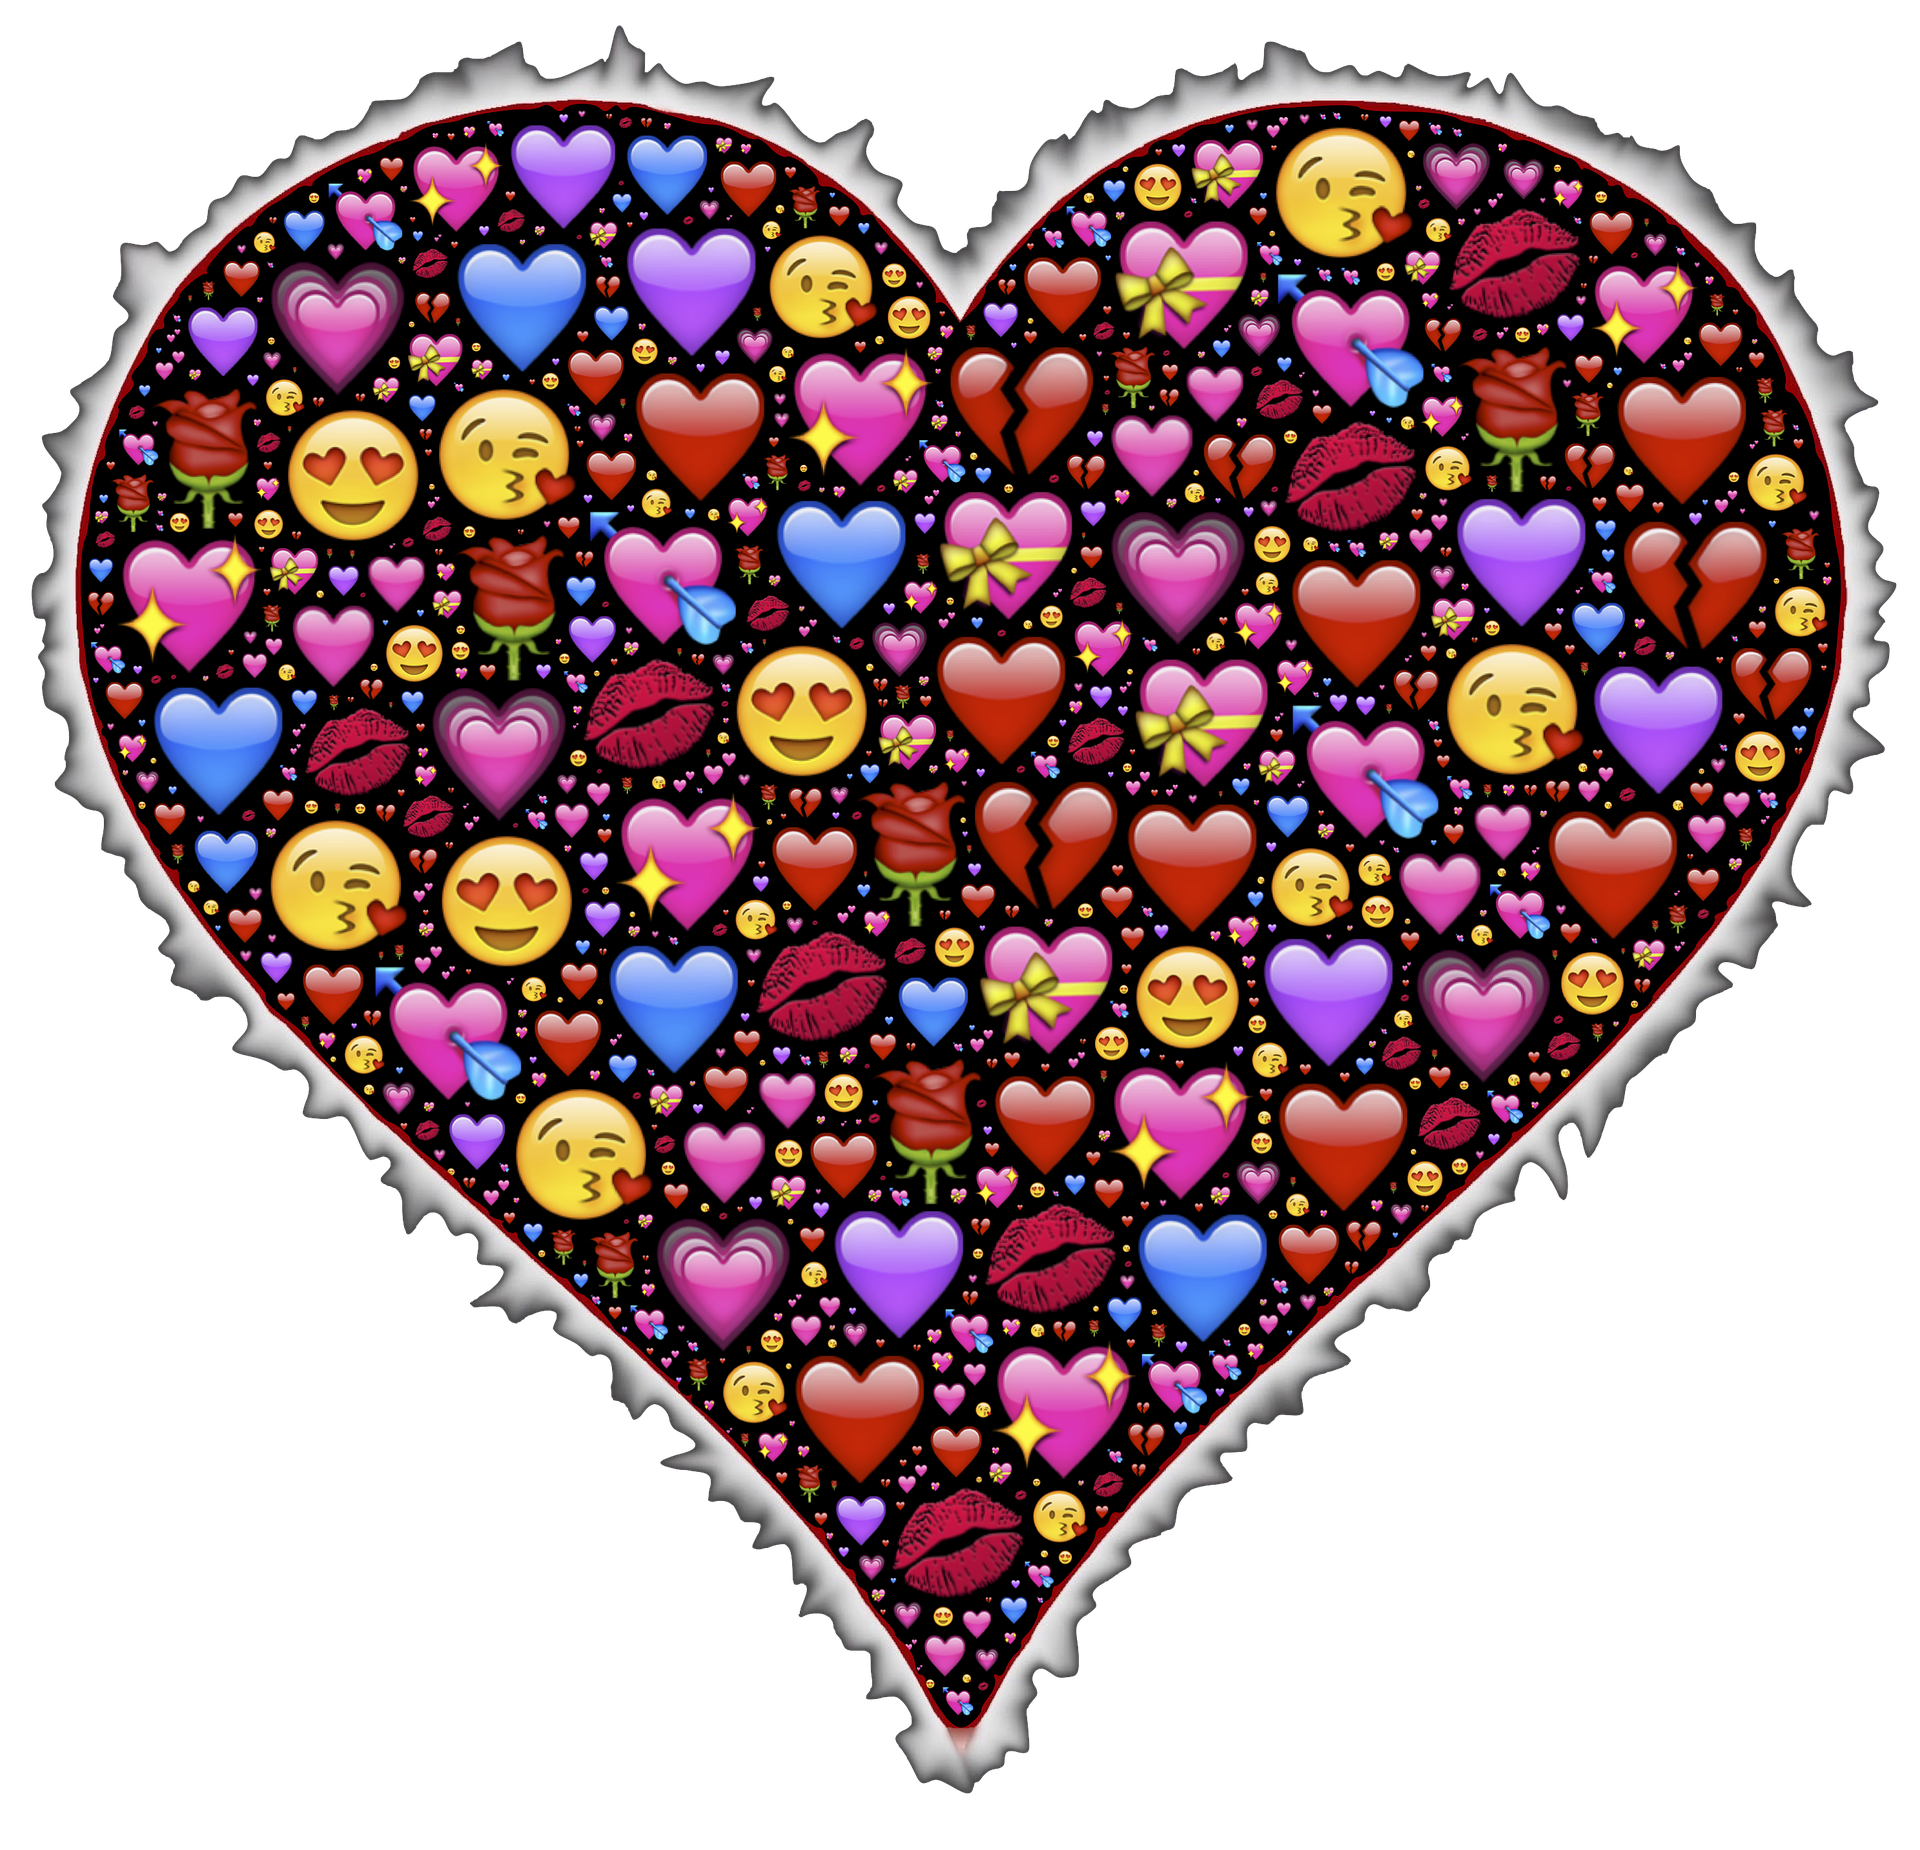 She sent me a heart emoji